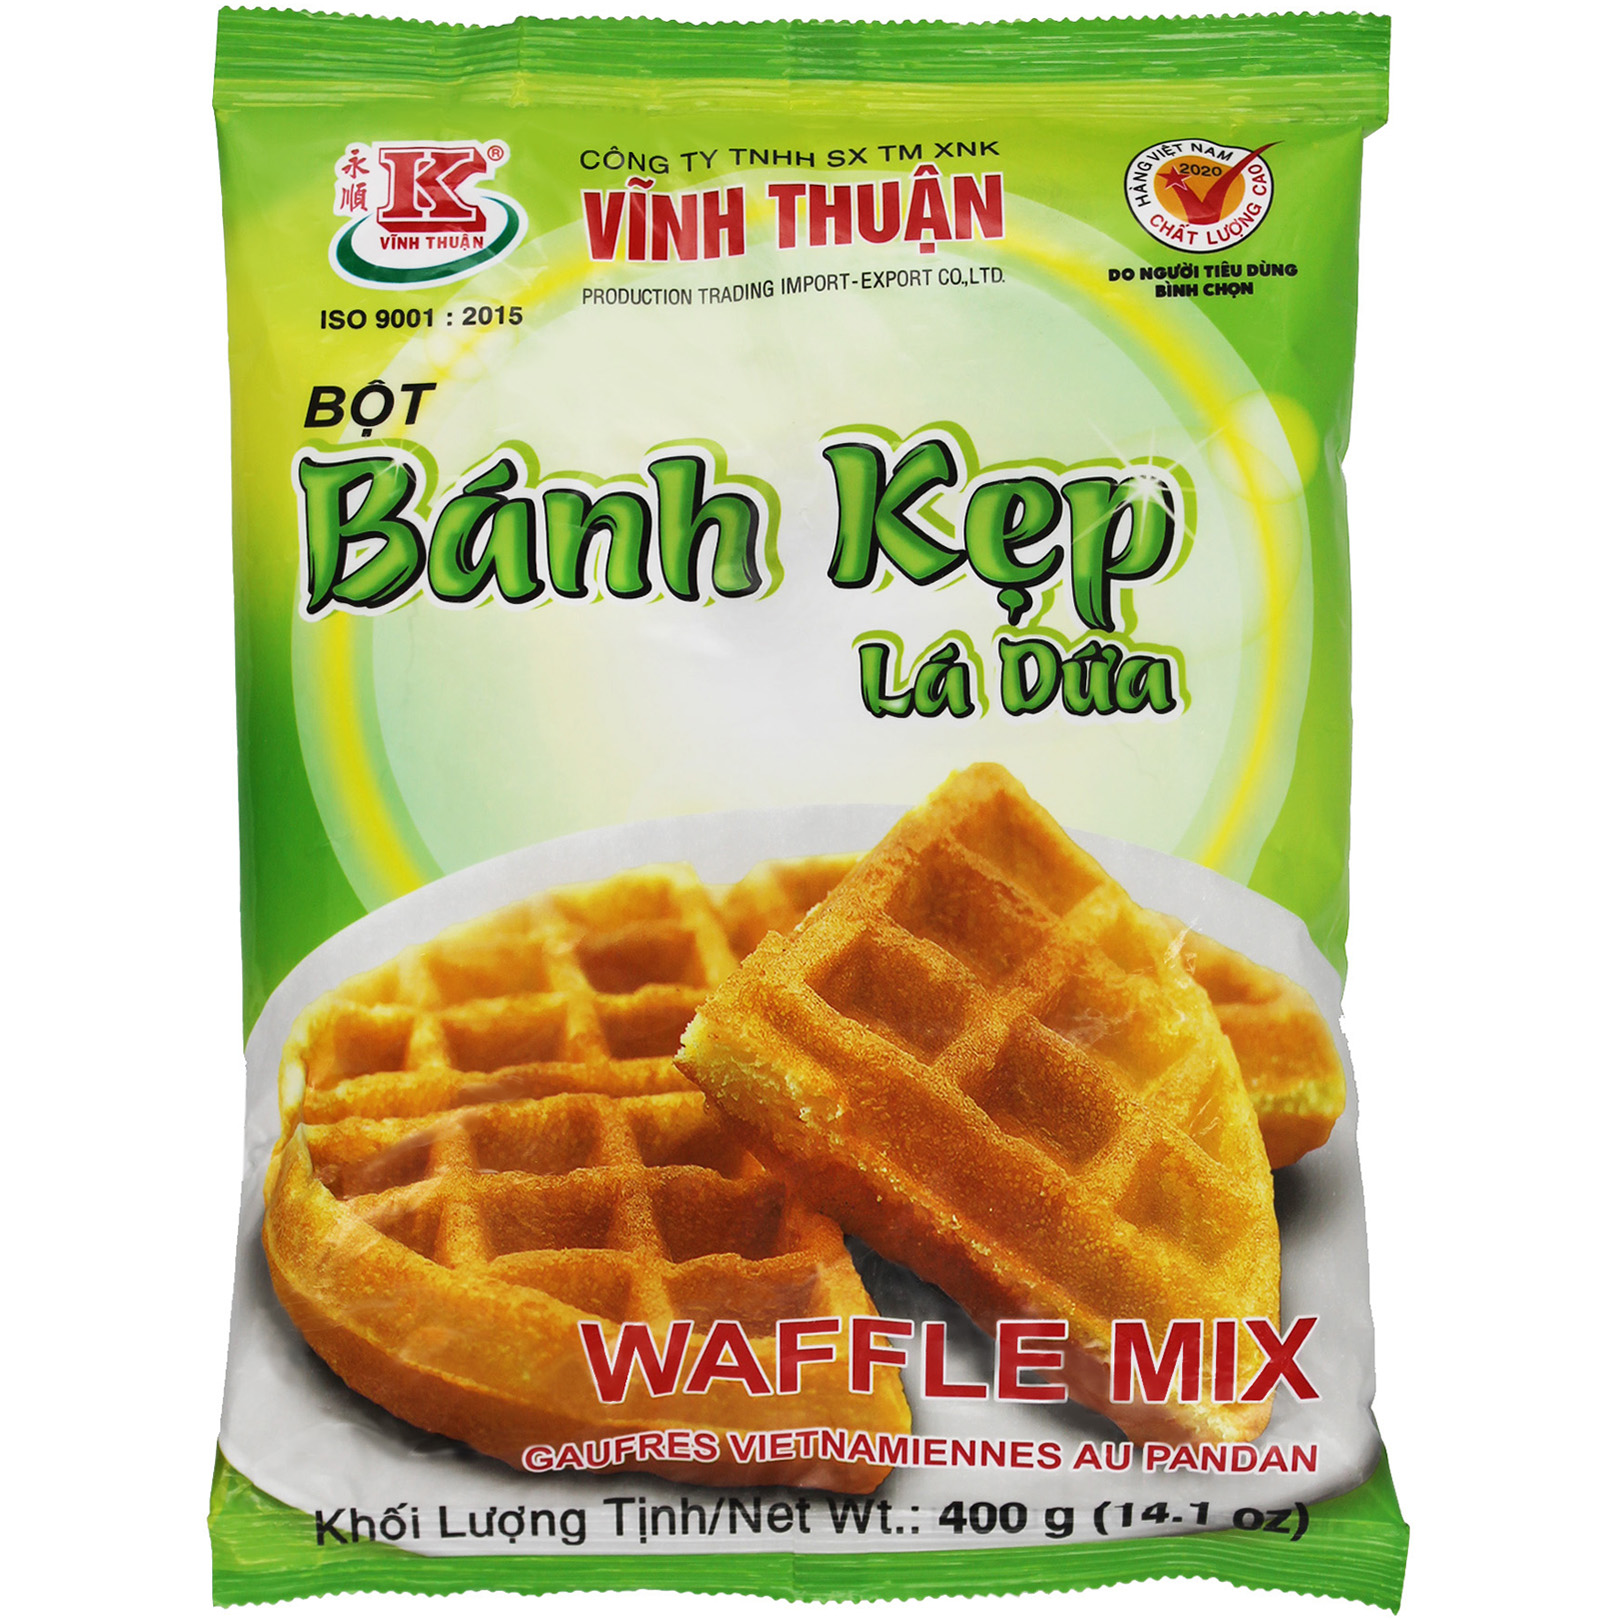 Waffle Mix Banh Kep La Dua Thumbnail